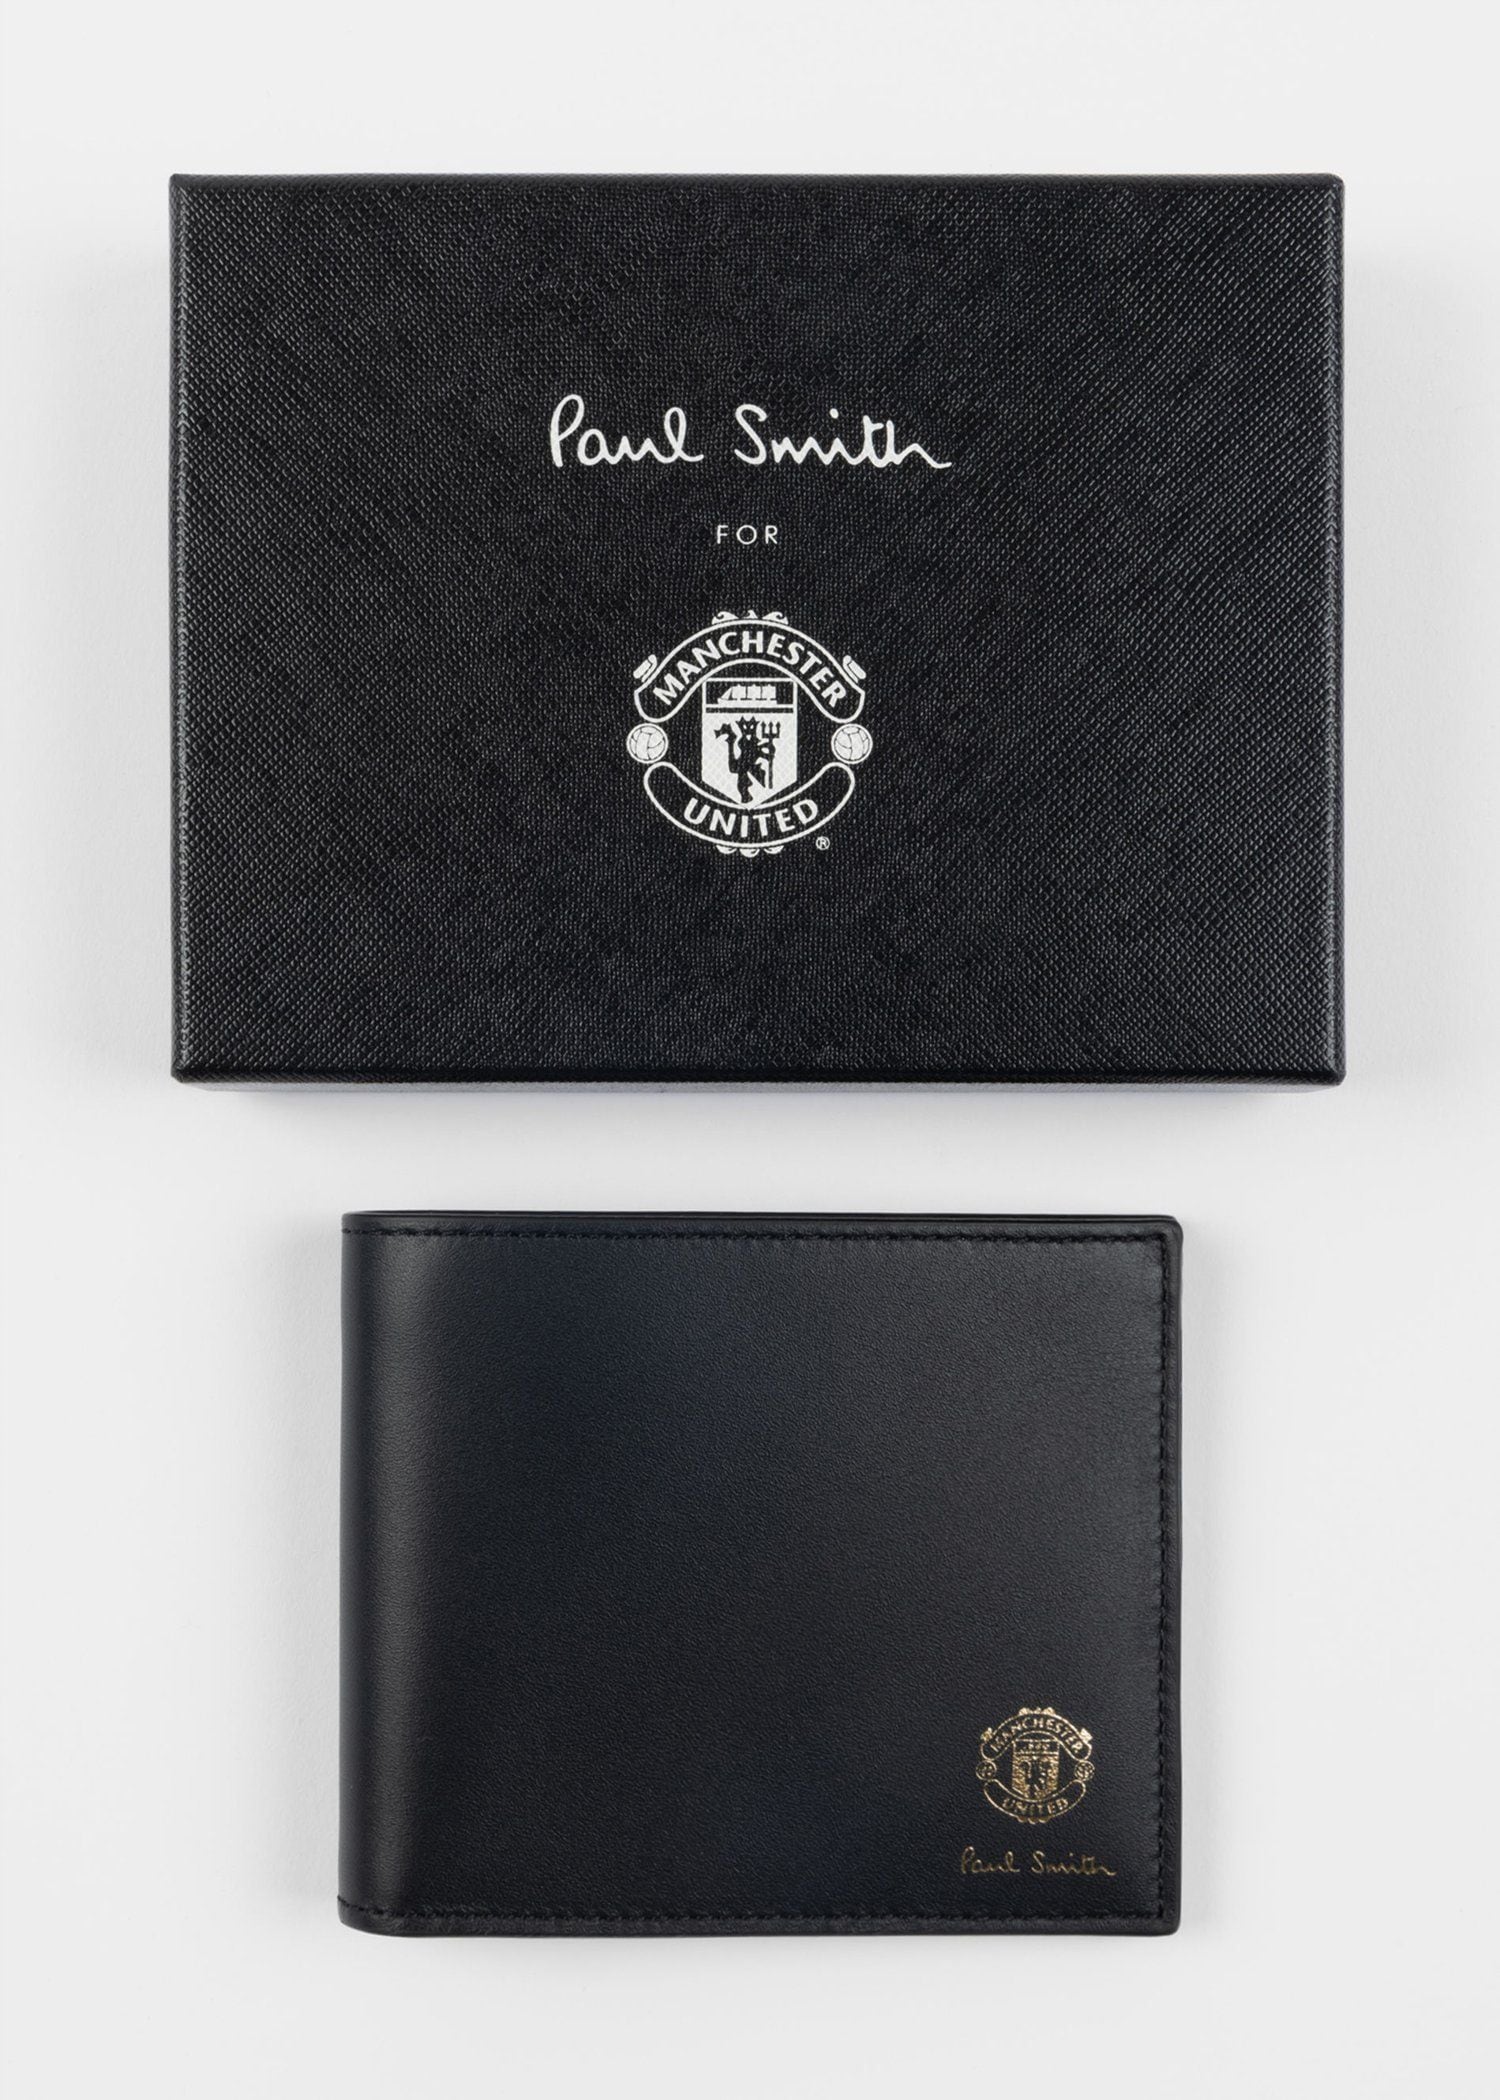 Paul Smith & Manchester United スタジアム 2つ折り財布